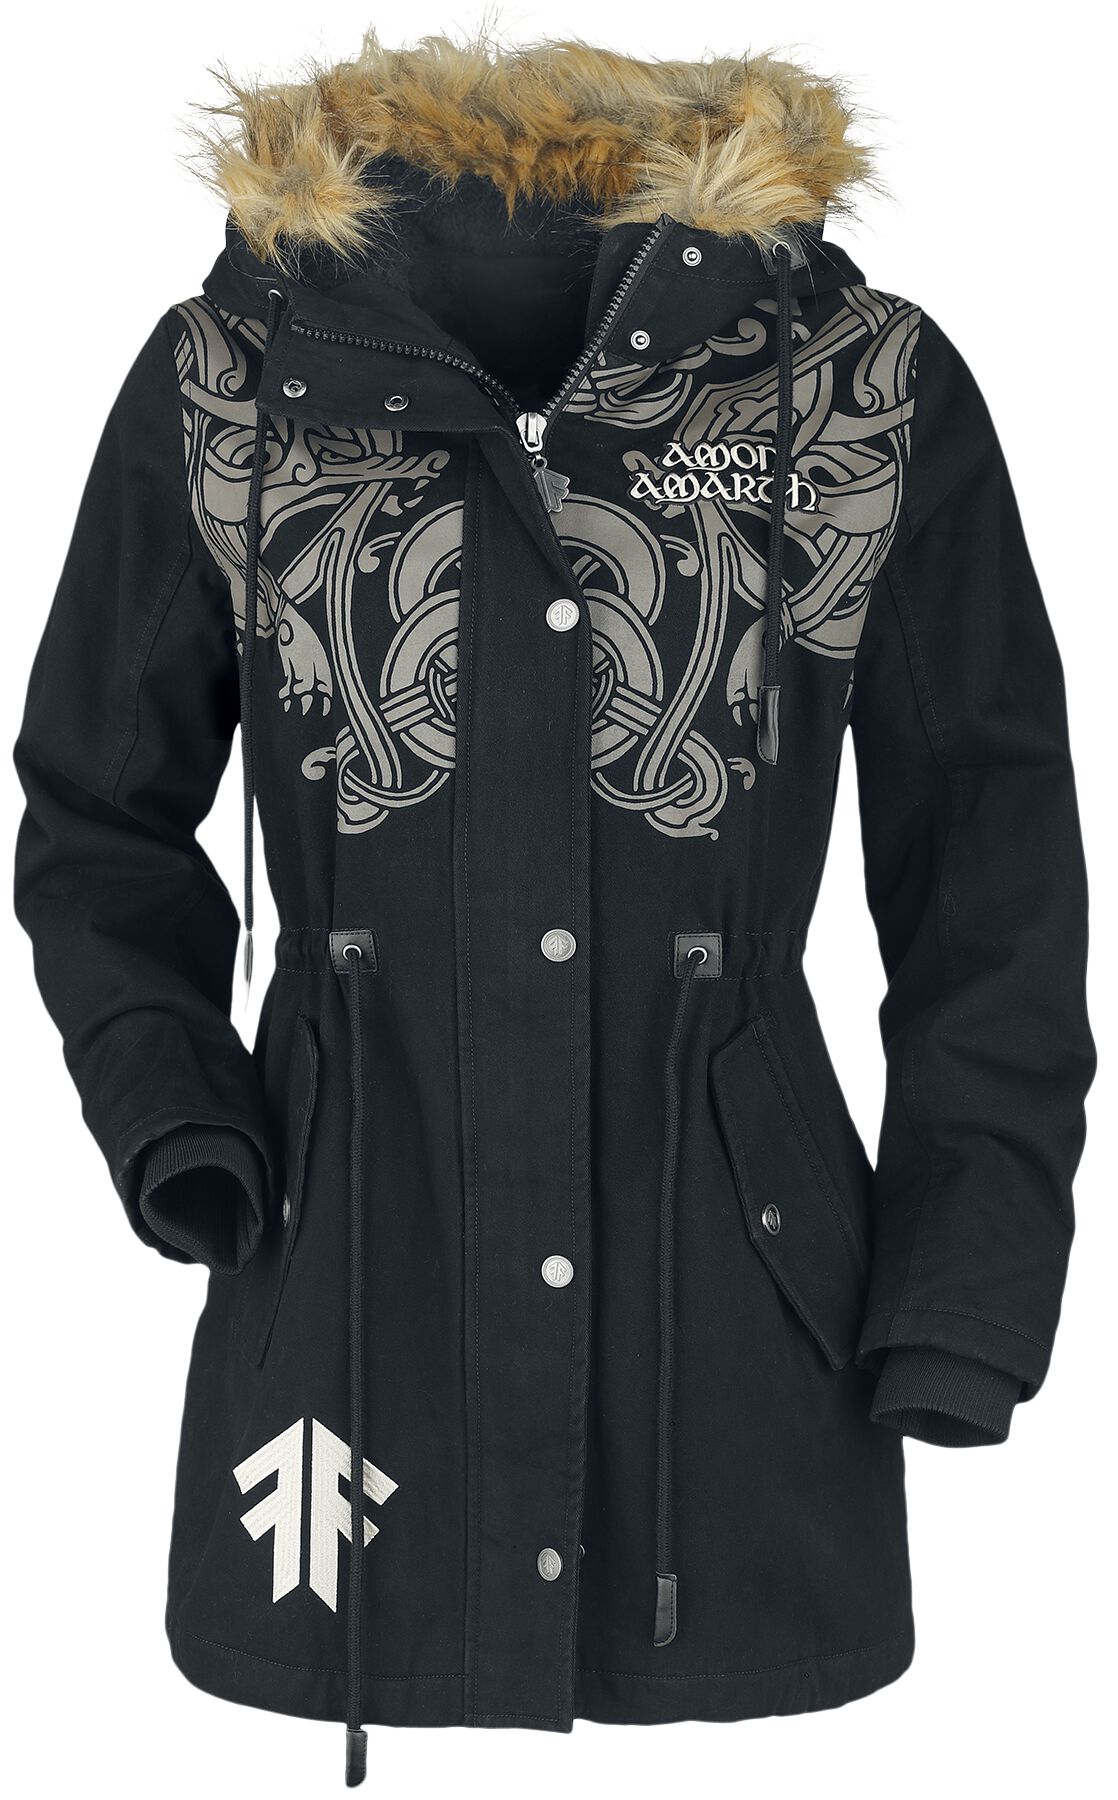 Amon Amarth Winterjacke - EMP Signature Collection - S bis XL - für Damen - Größe L - schwarz  - EMP exklusives Merchandise!